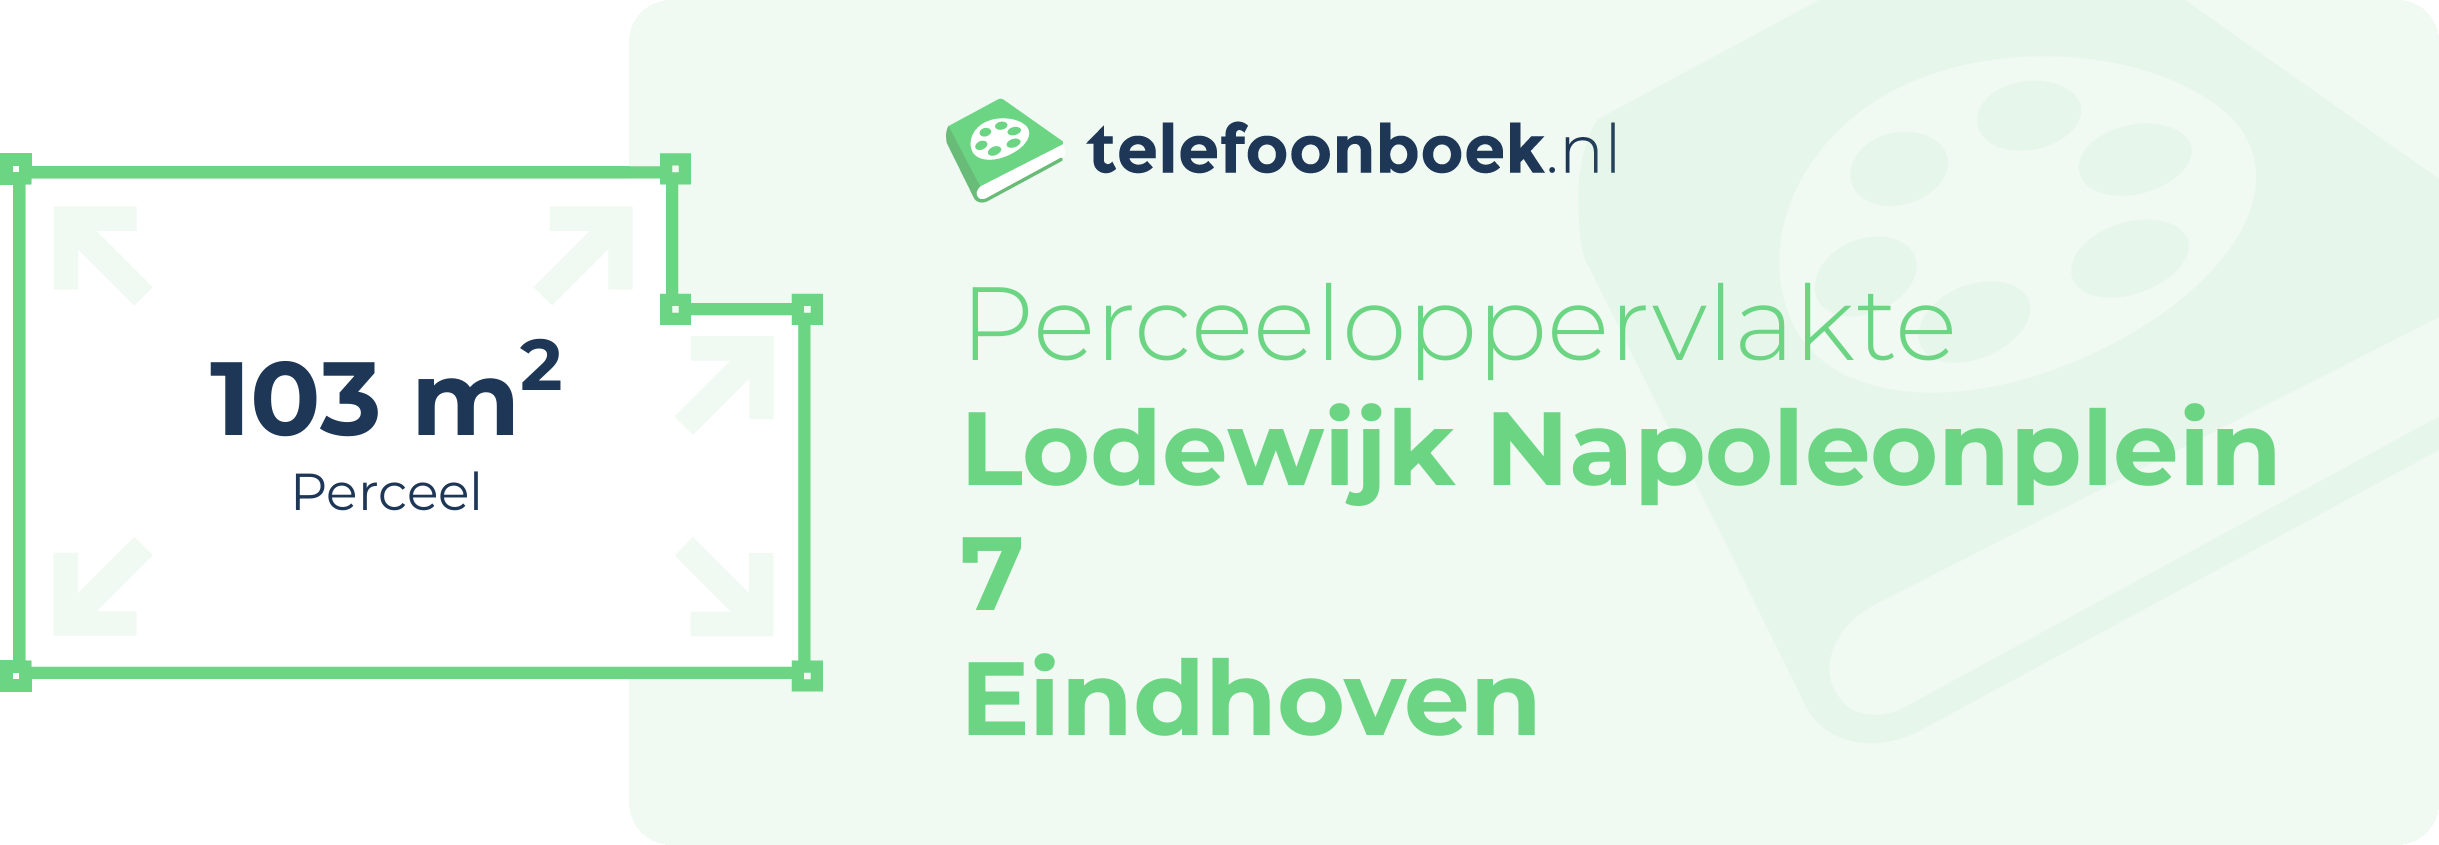 Perceeloppervlakte Lodewijk Napoleonplein 7 Eindhoven